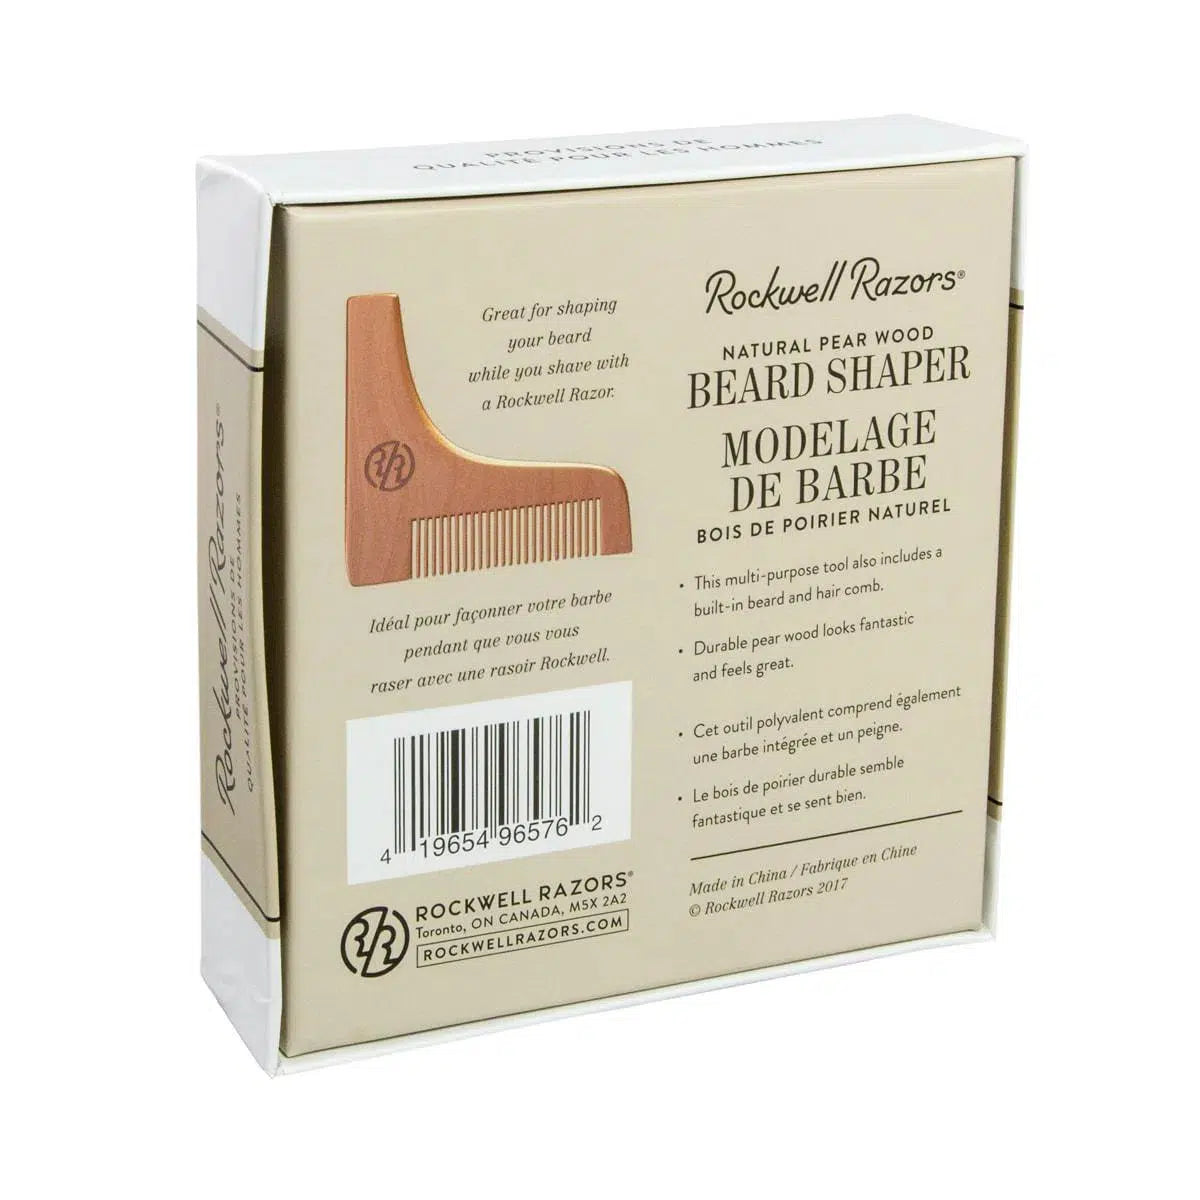 Natural Pear Wood Beard Shaper